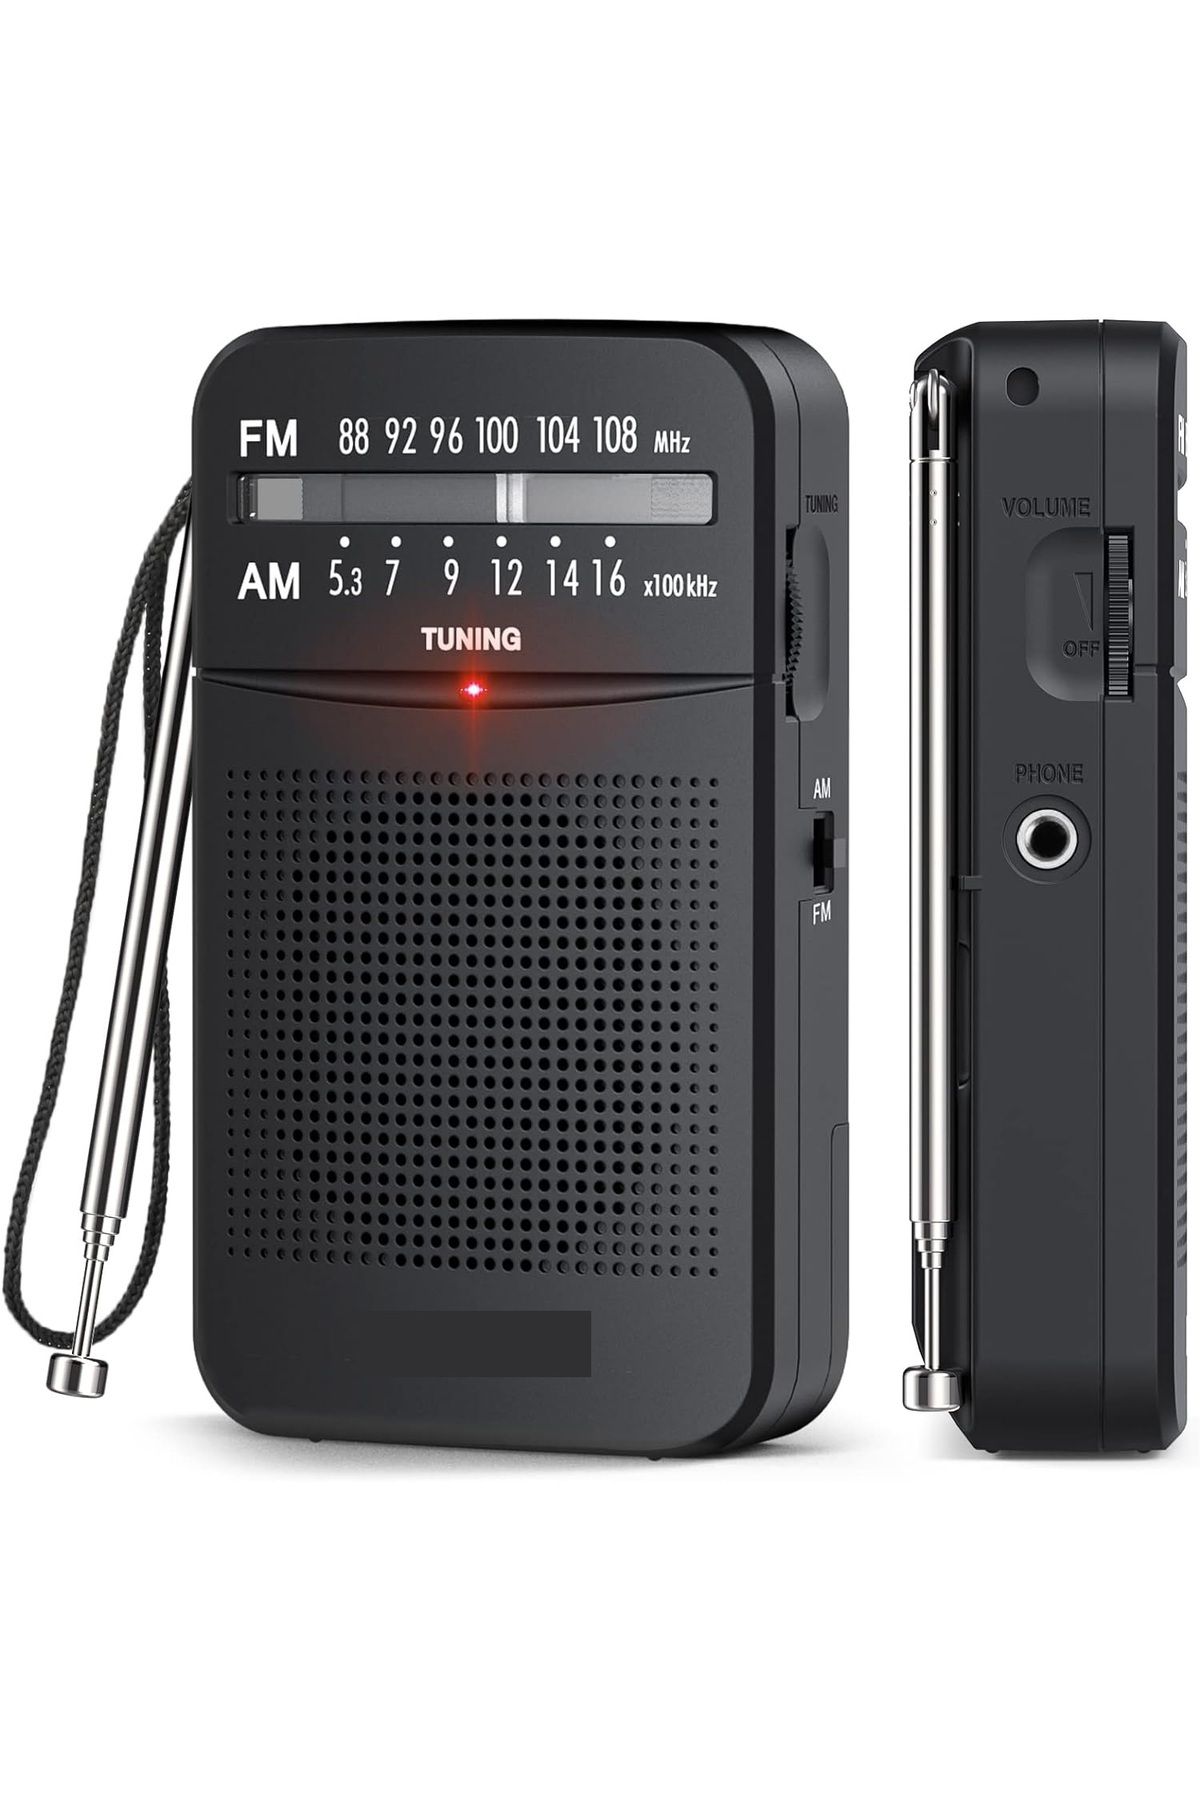 Hobimtek K-263 Taşınabilir Am/fm Radyo Küçük Boy Cep Radyosu Pilli Radyo